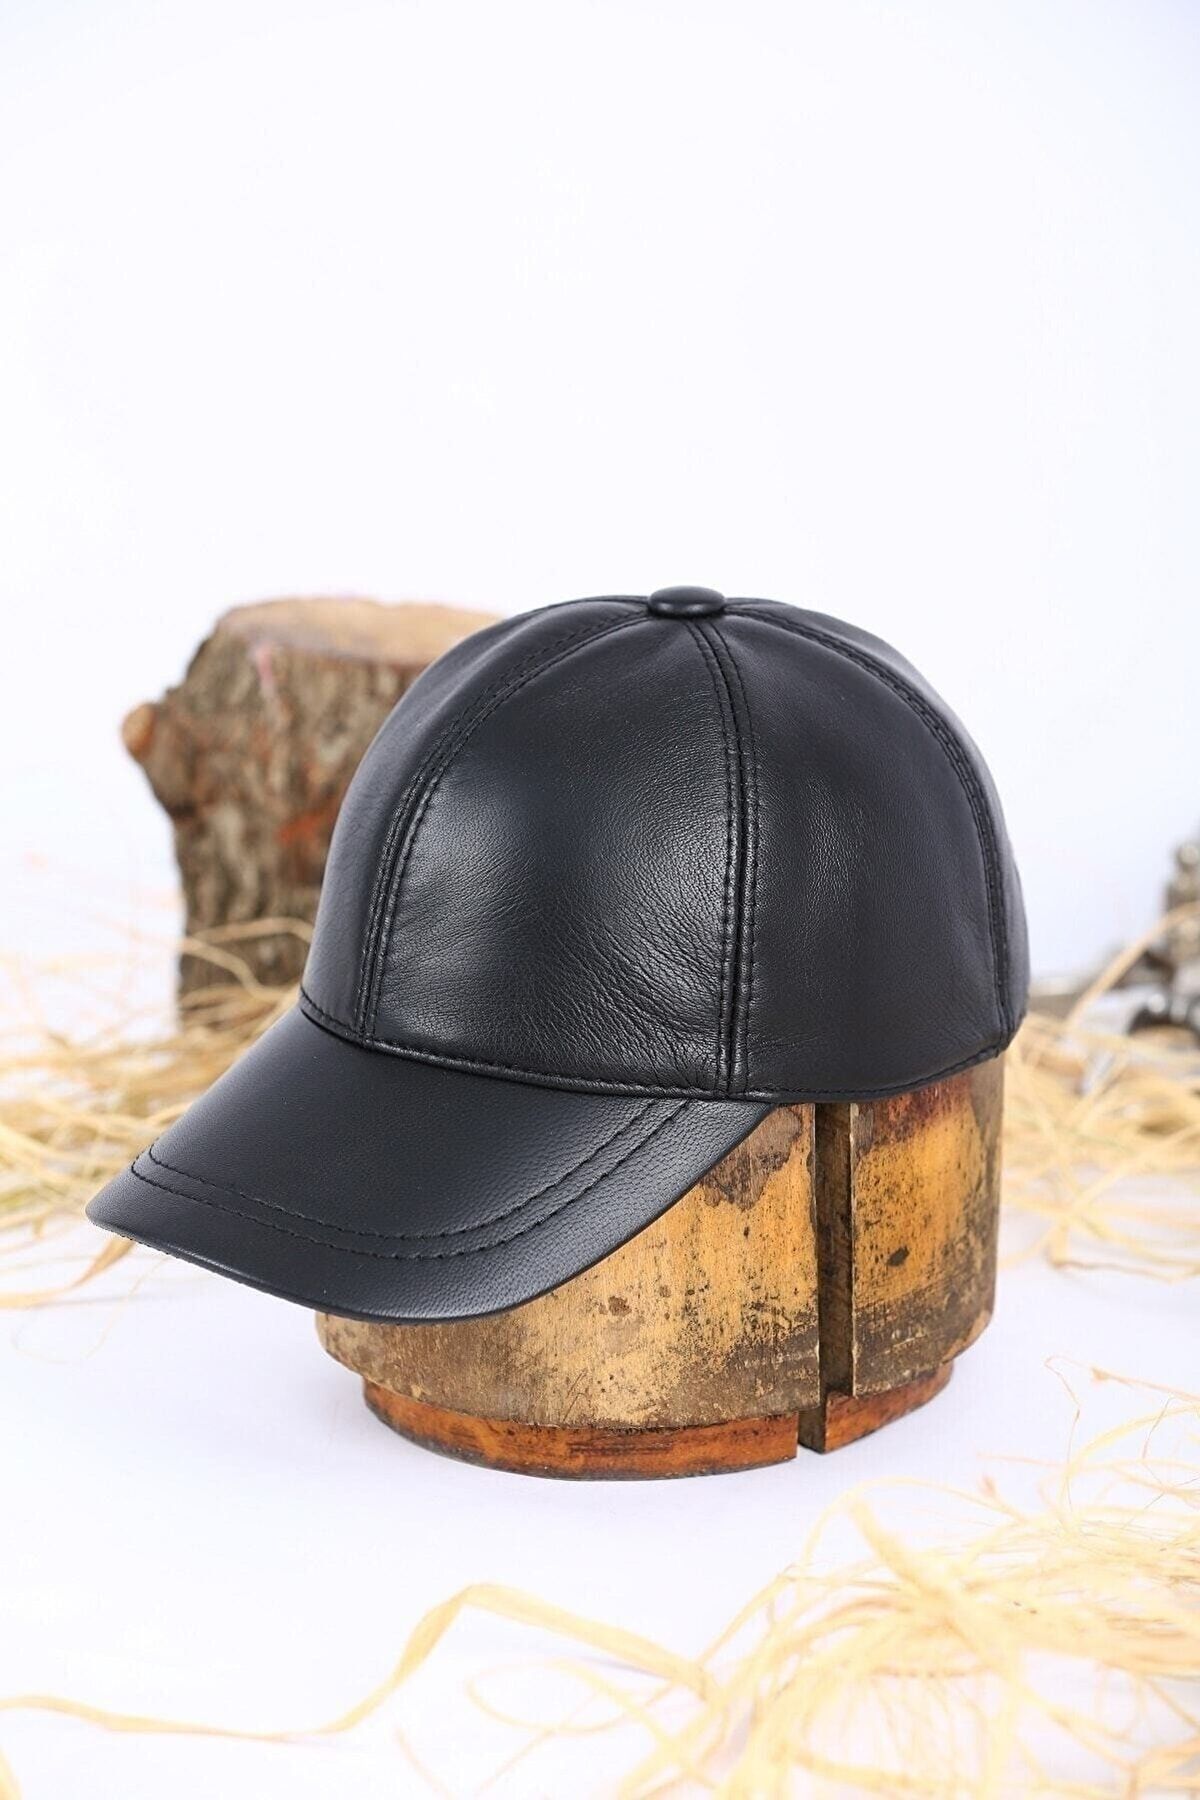 BY SCK Unisex Siyah Hakiki Gerçek Deri Şapka Bere - Kışlık Şapka - Yeni Sezon